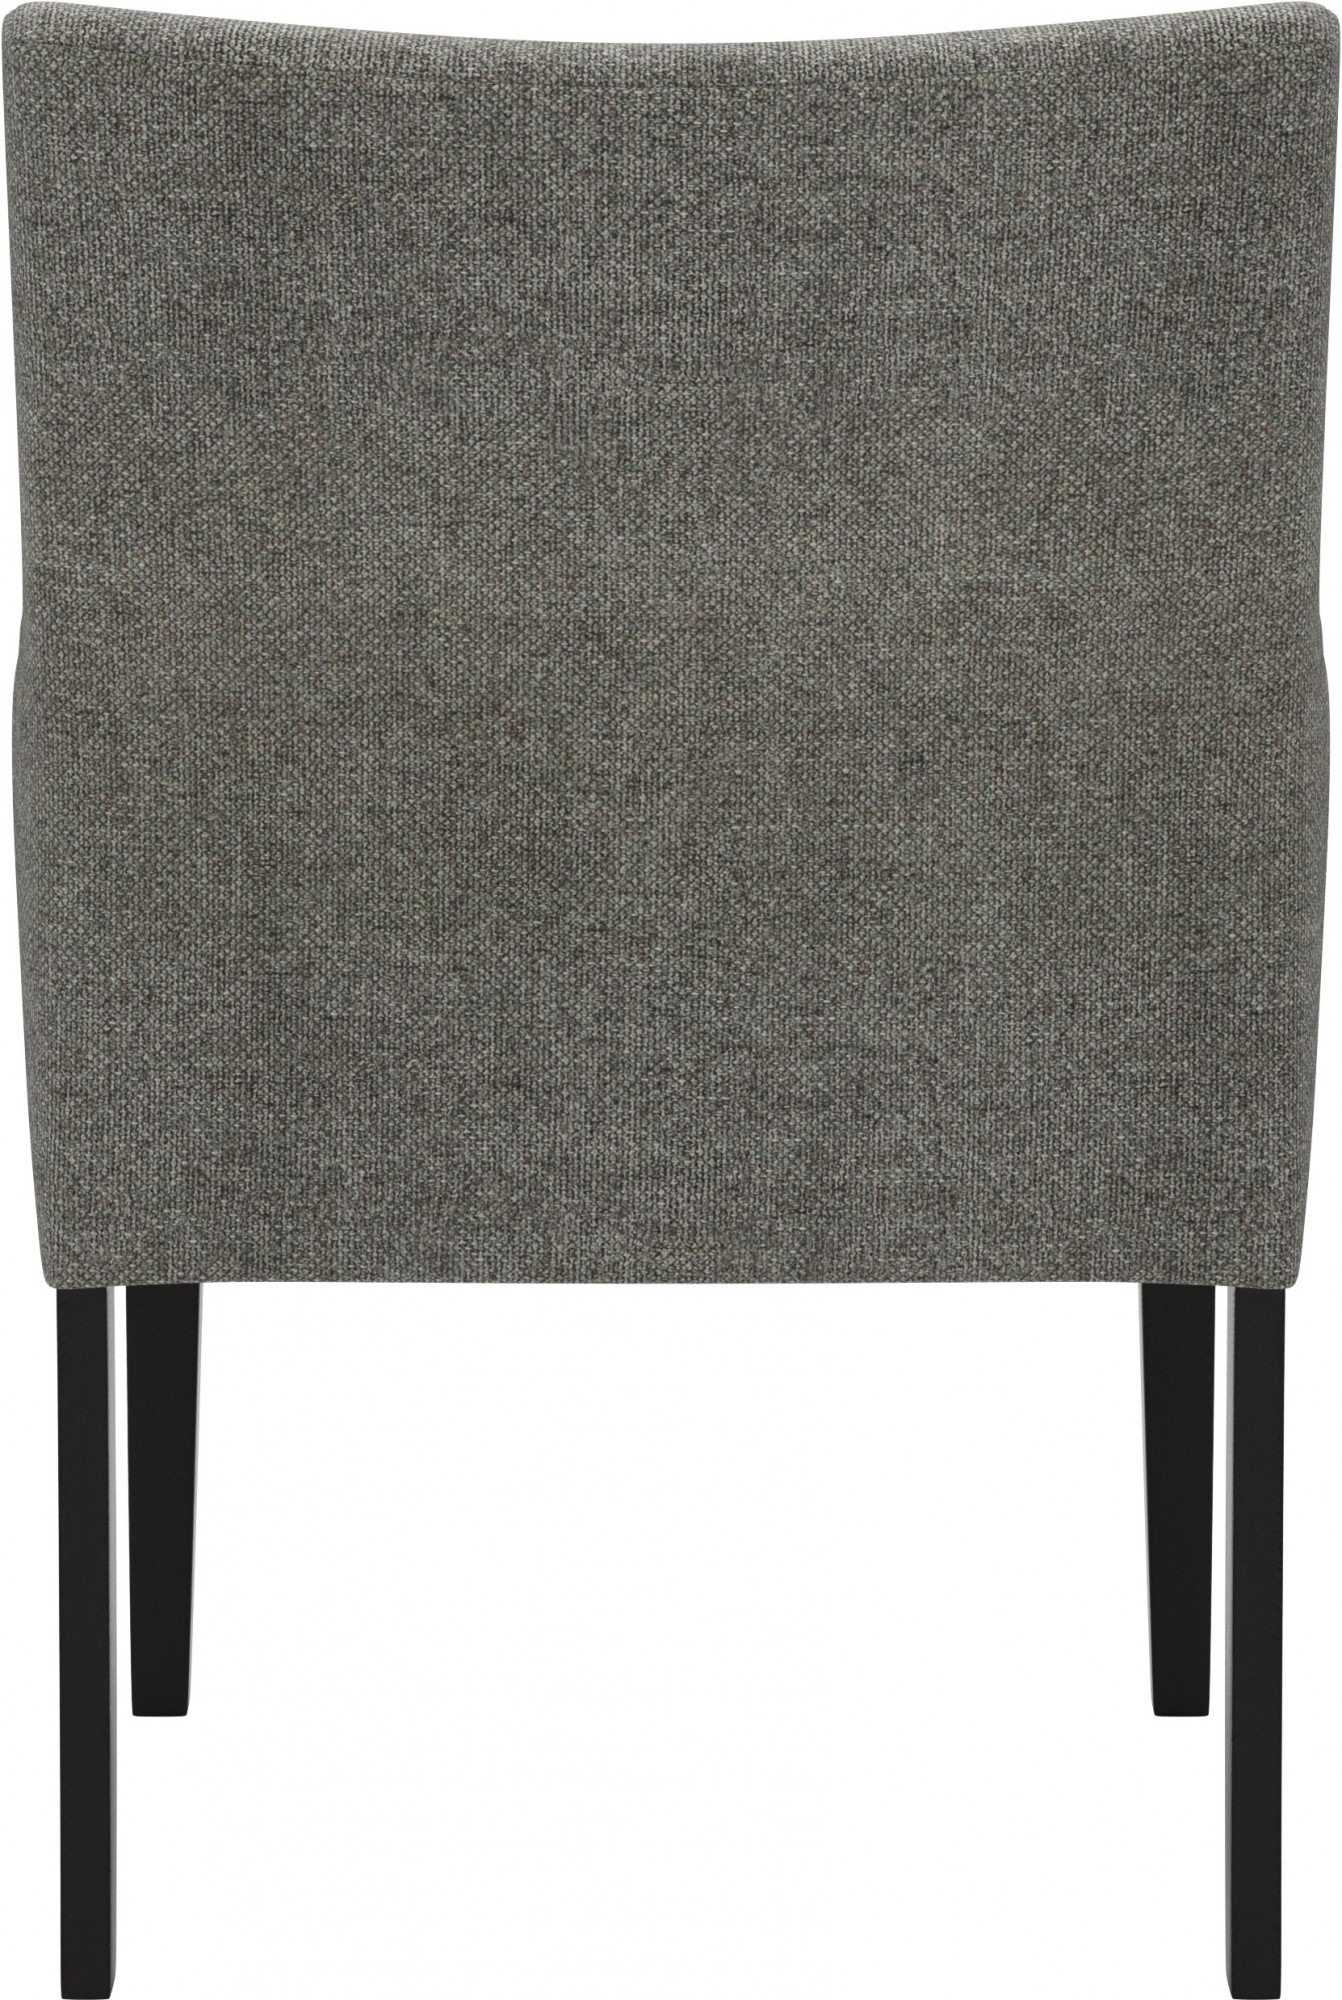 Home affaire Armlehnstuhl »Elda«, Polyester, 2 Bezugsqualitäten, mehrere Farbvarianten, Sitzhöhe 50 cm